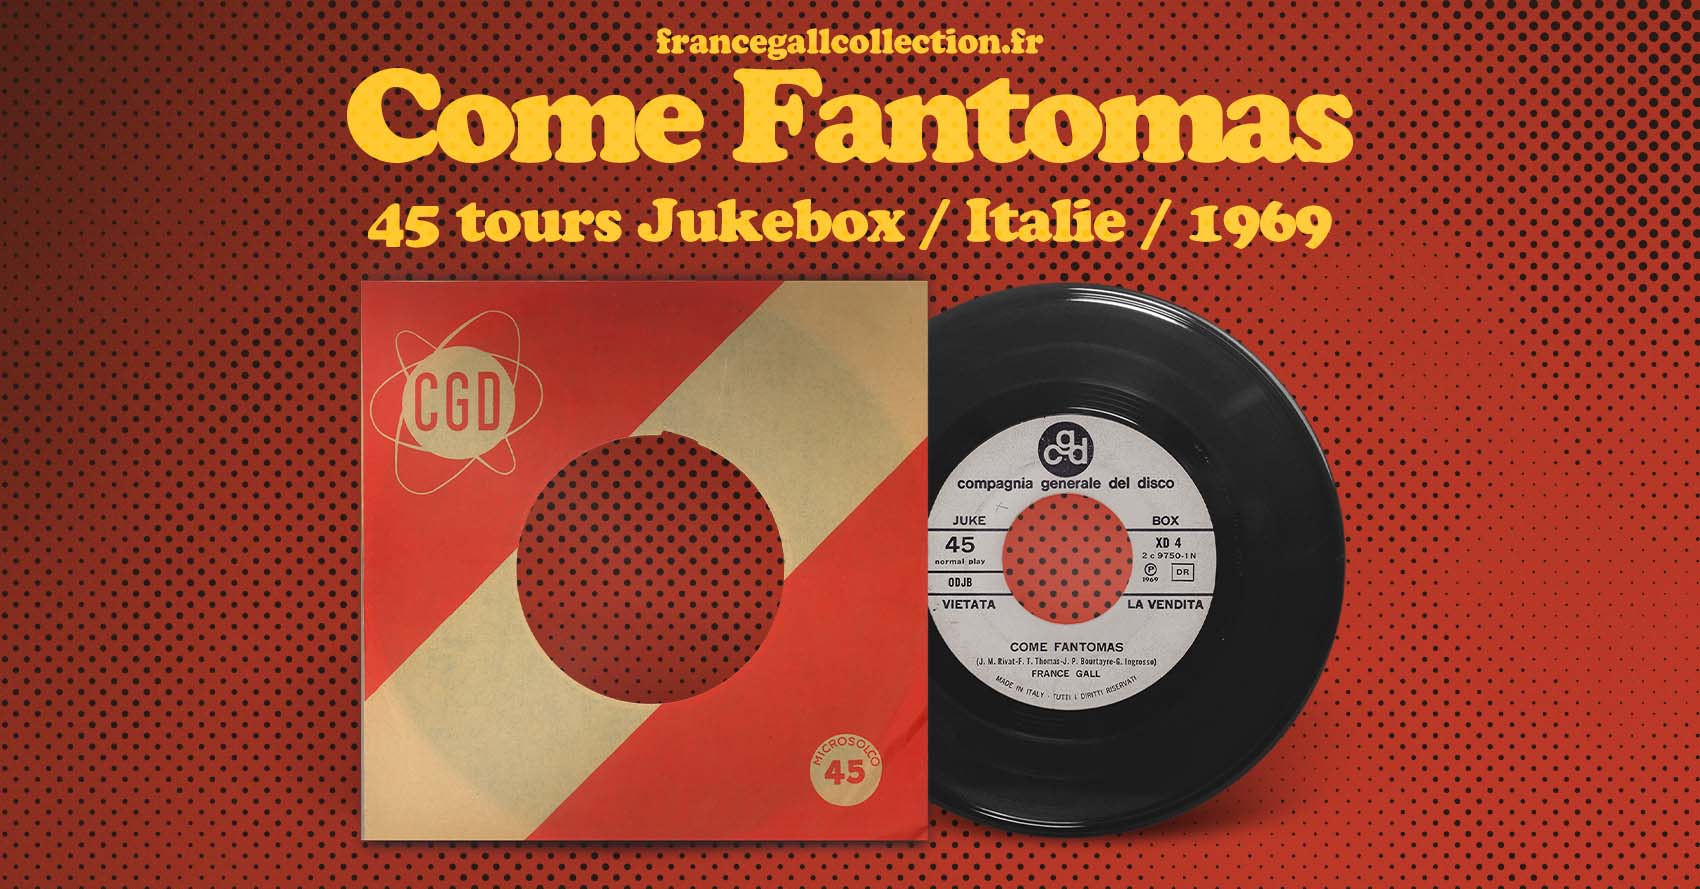 Ce 45 tours pour les jukebox édité en Italie en février 1969 contient une adaptation en italien de Homme tout petit, Come fantomas.